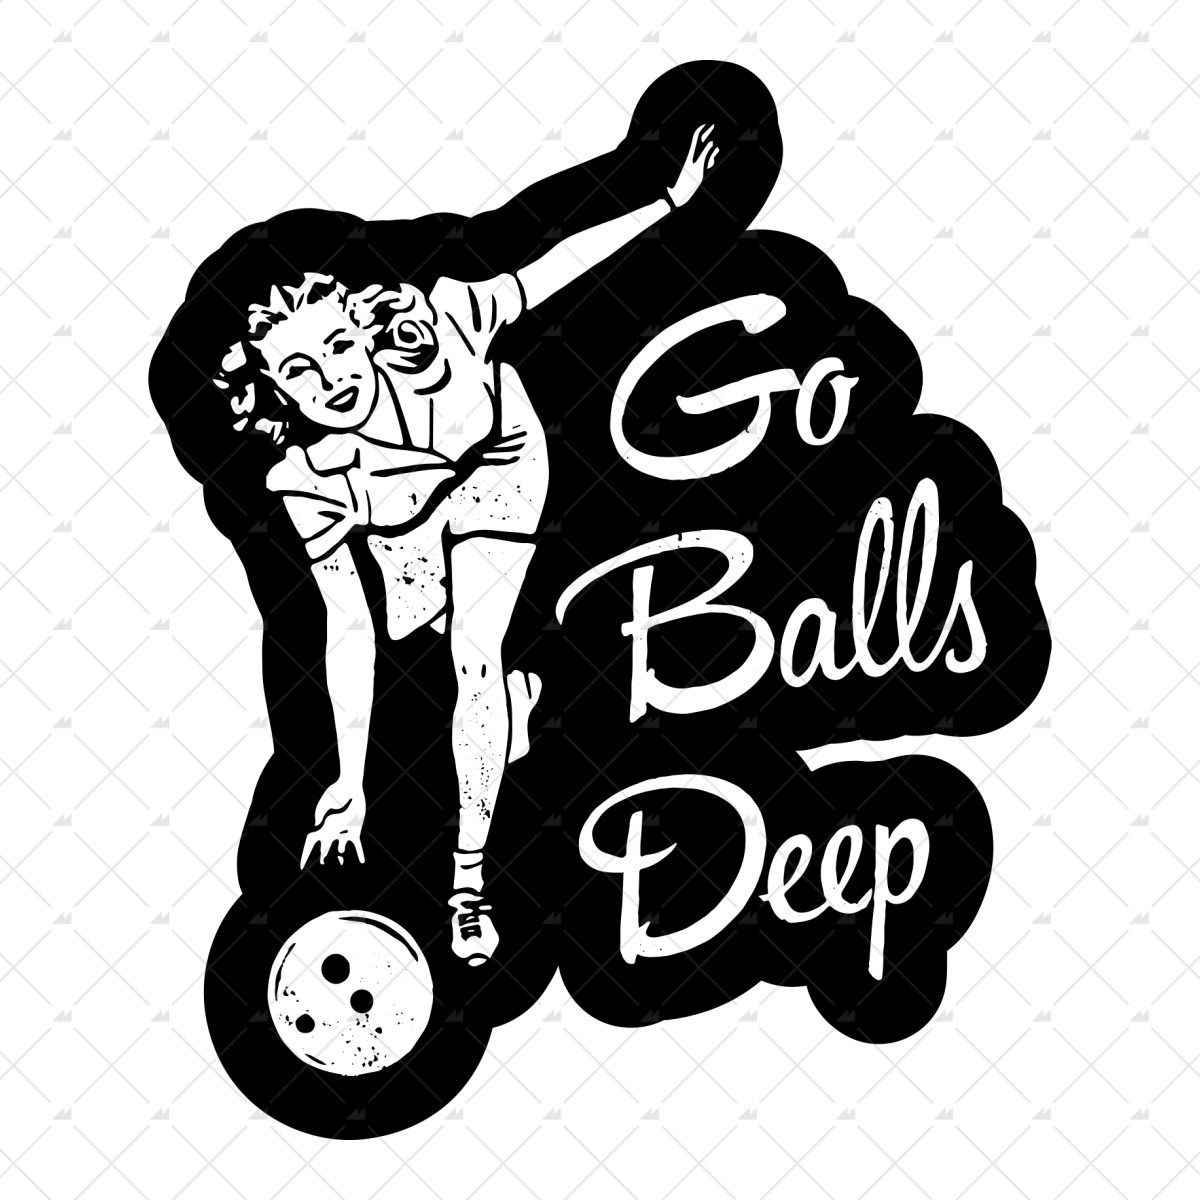 Go Balls Deep Sticker M00nshot 